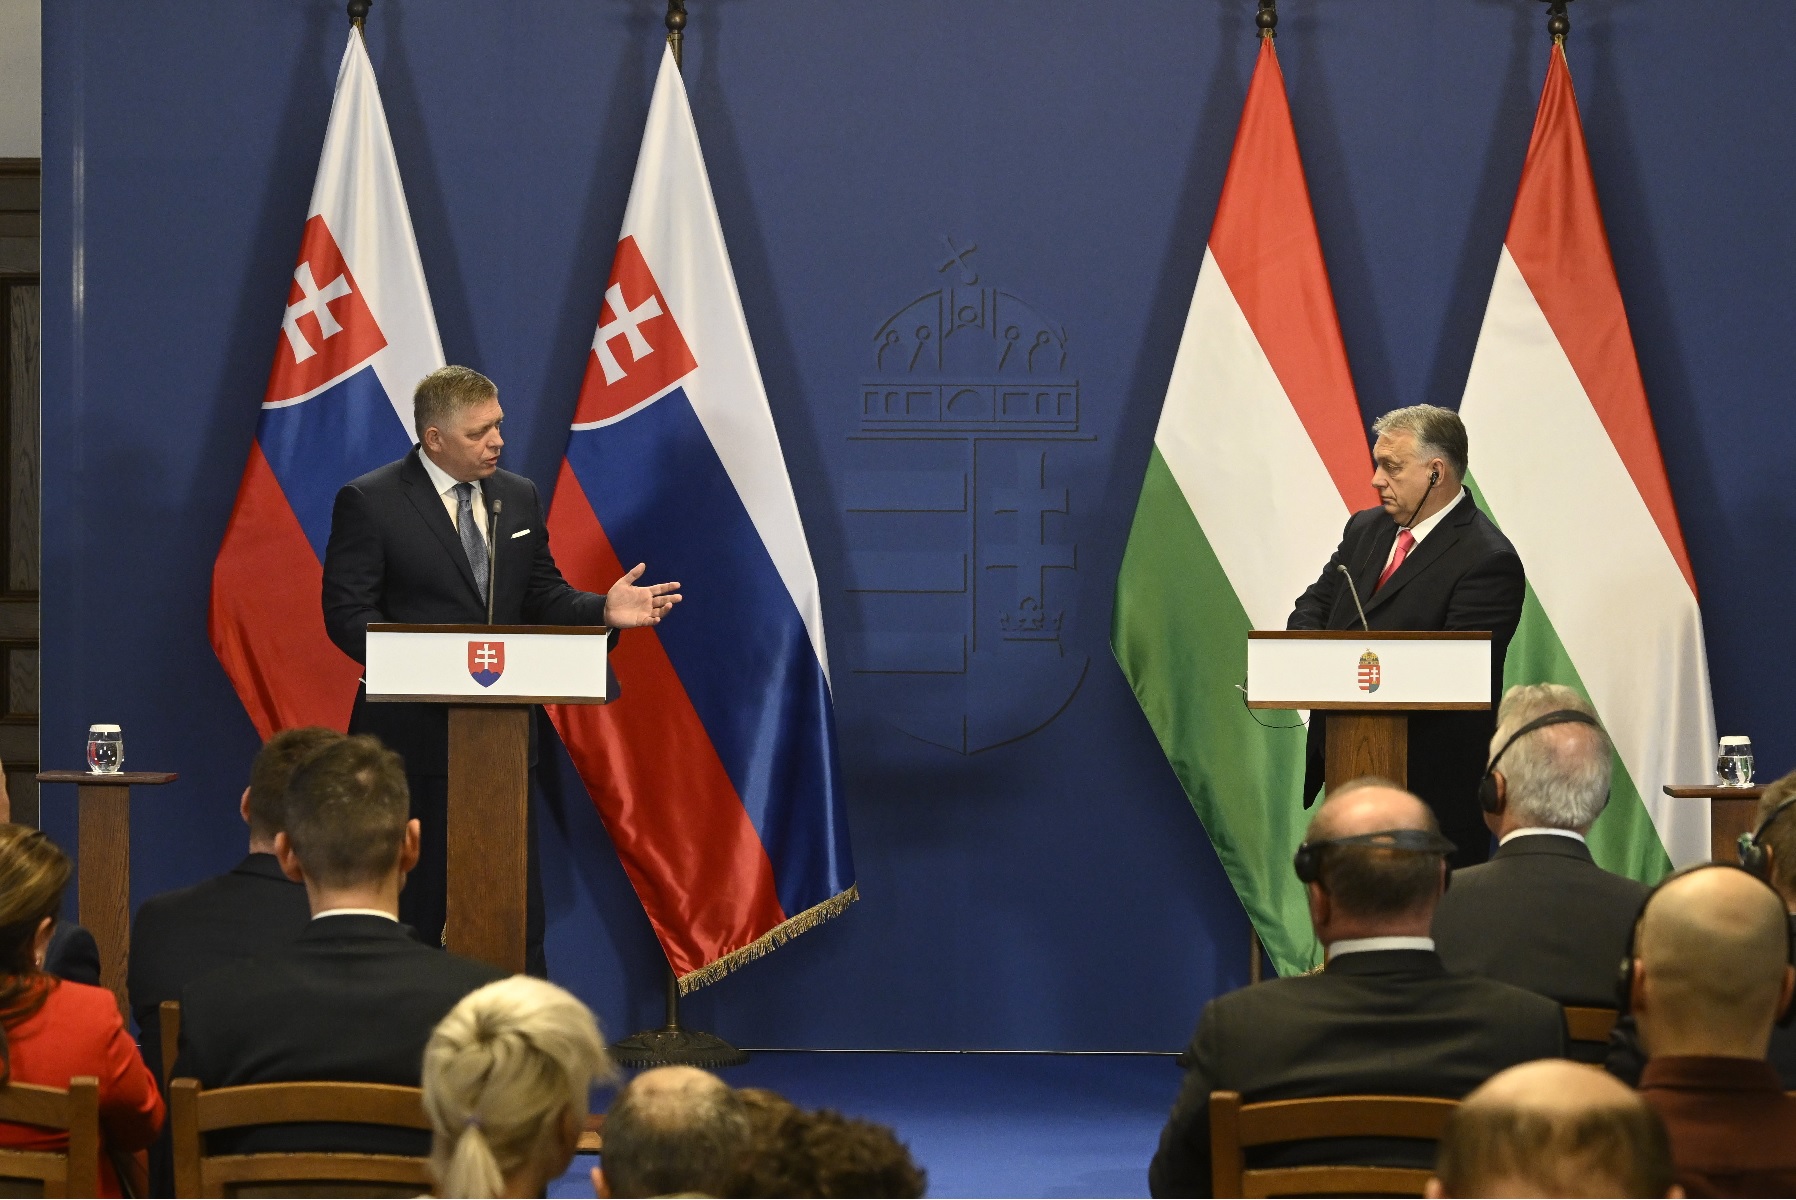 Kiderült, miről tárgyalt Orbán Viktor és Robert Fico a Karmelitában